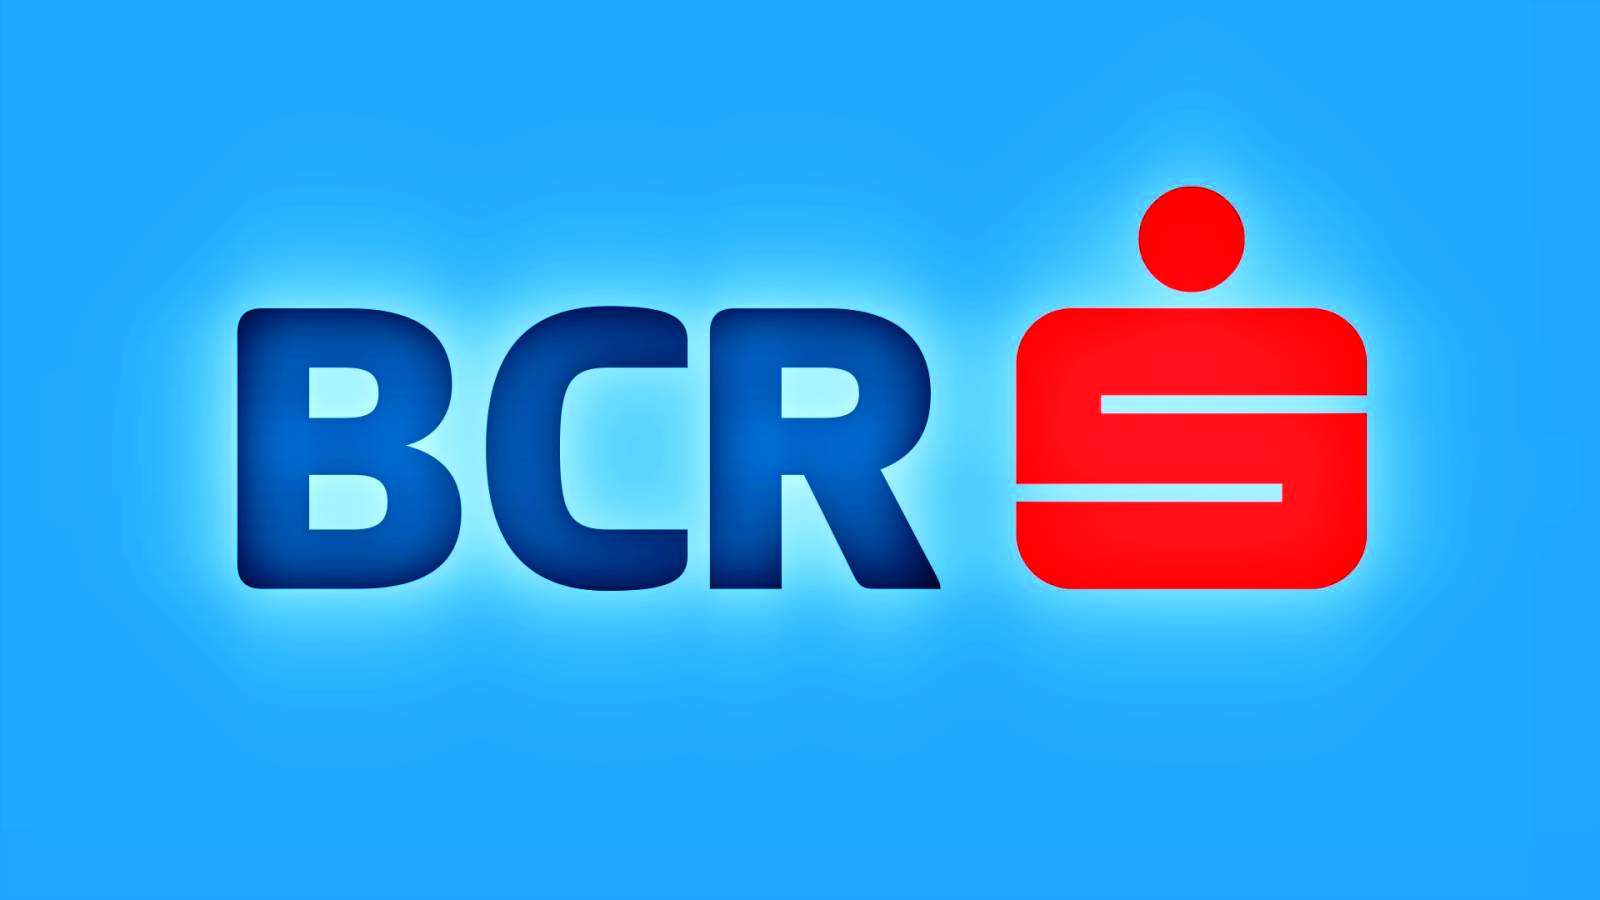 BCR Roumanie 2 messages IMPORTANTS envoyés aux clients roumains